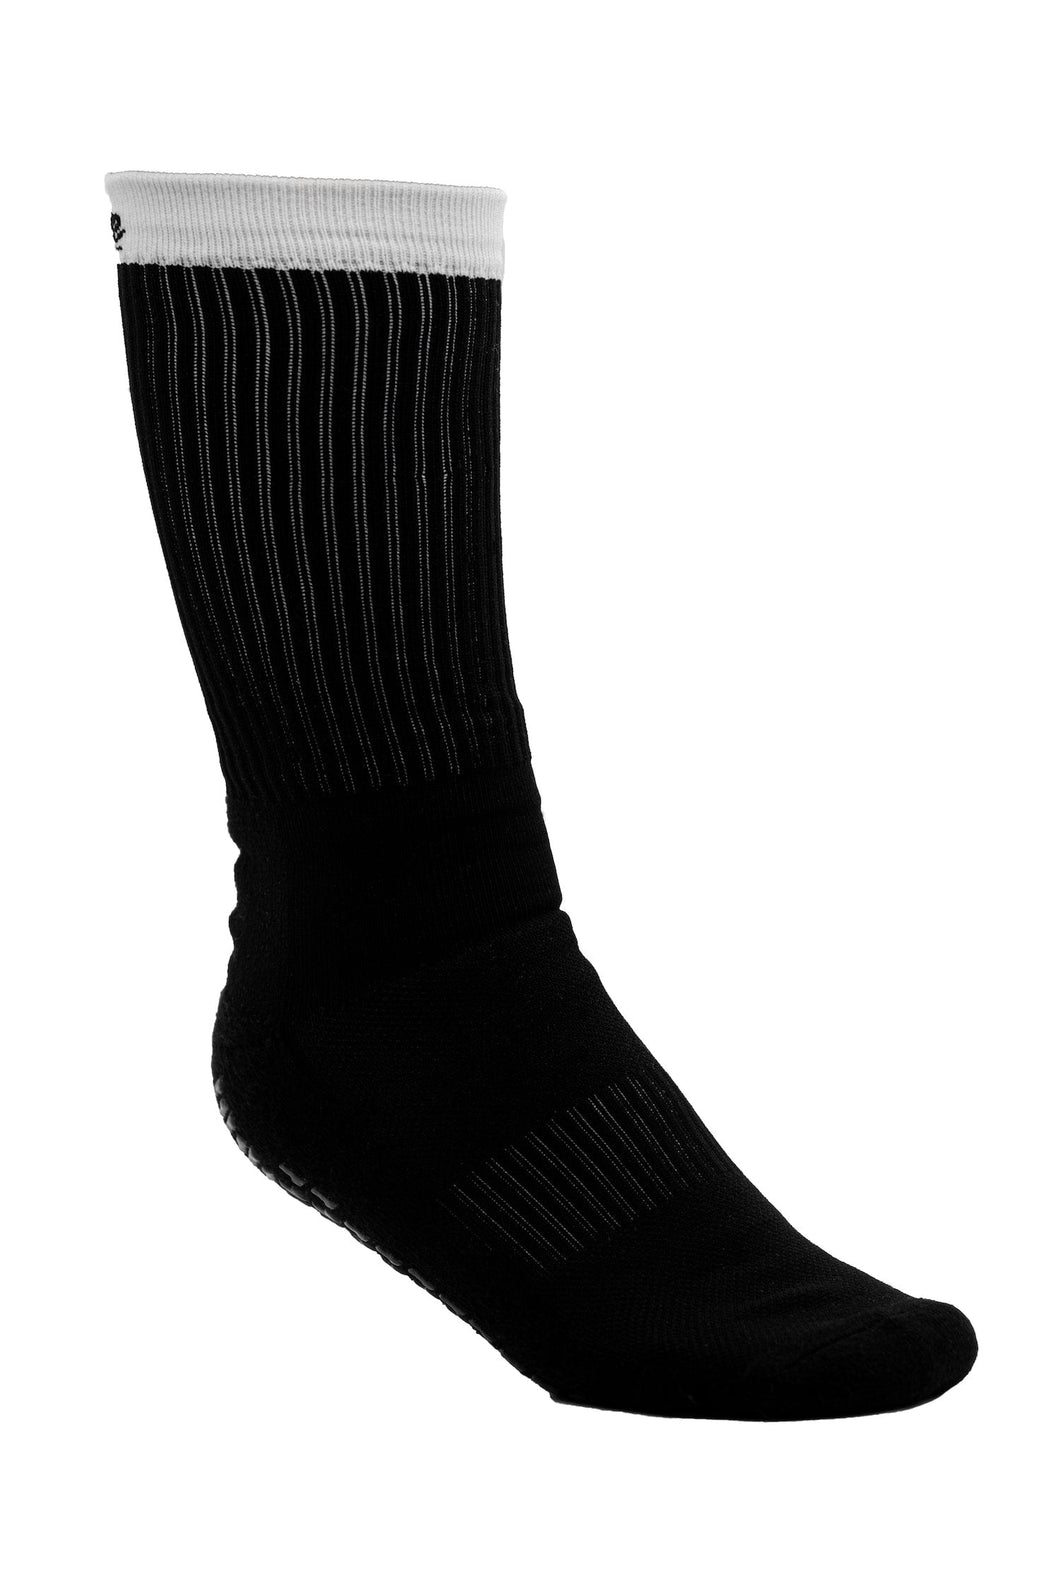 Octo Pro Socks 2.0 Black